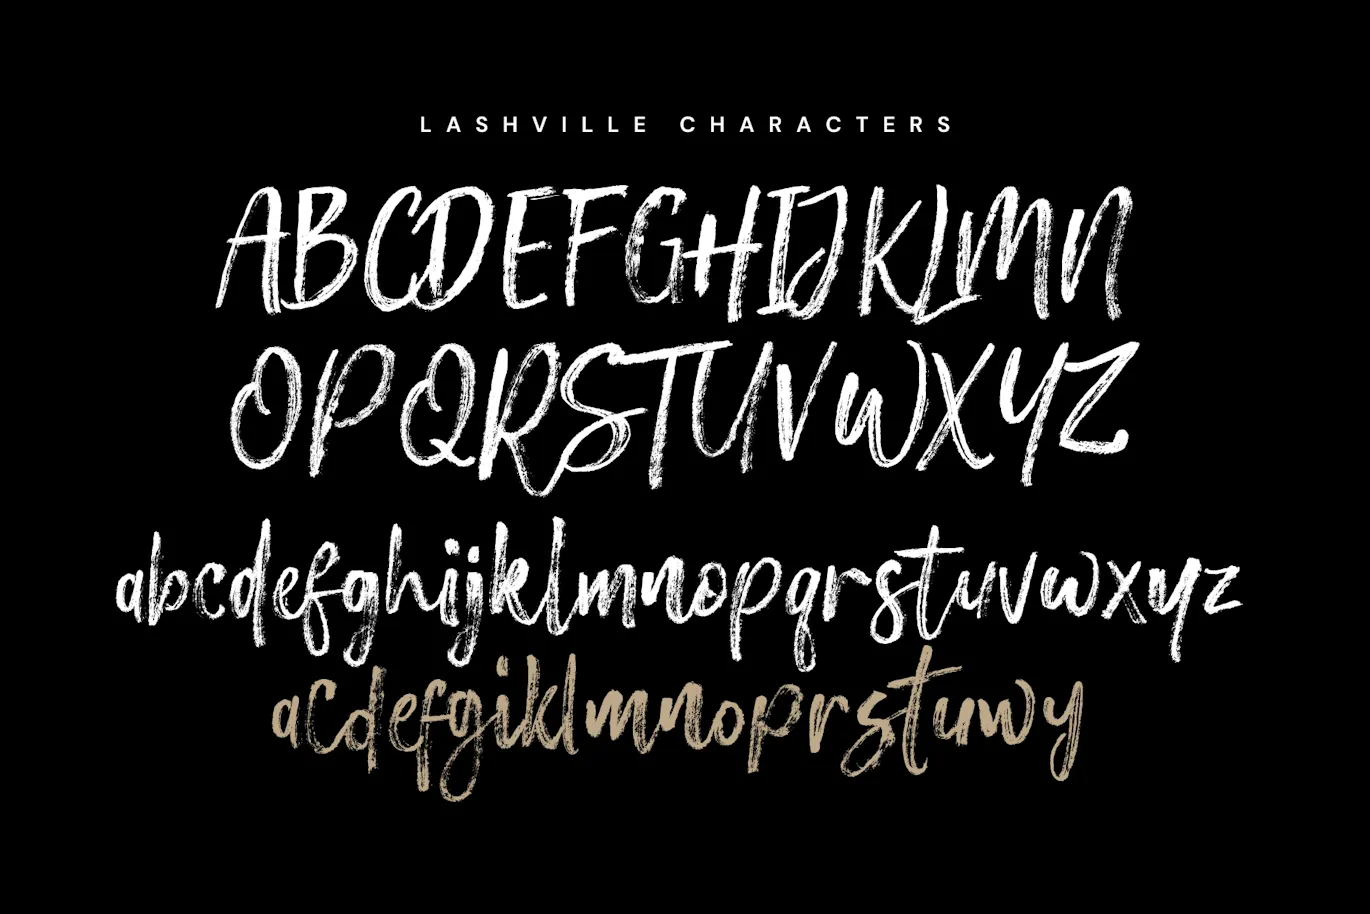 粗糙画笔的英文手写笔刷字体 - Lashville 设计字体 第4张